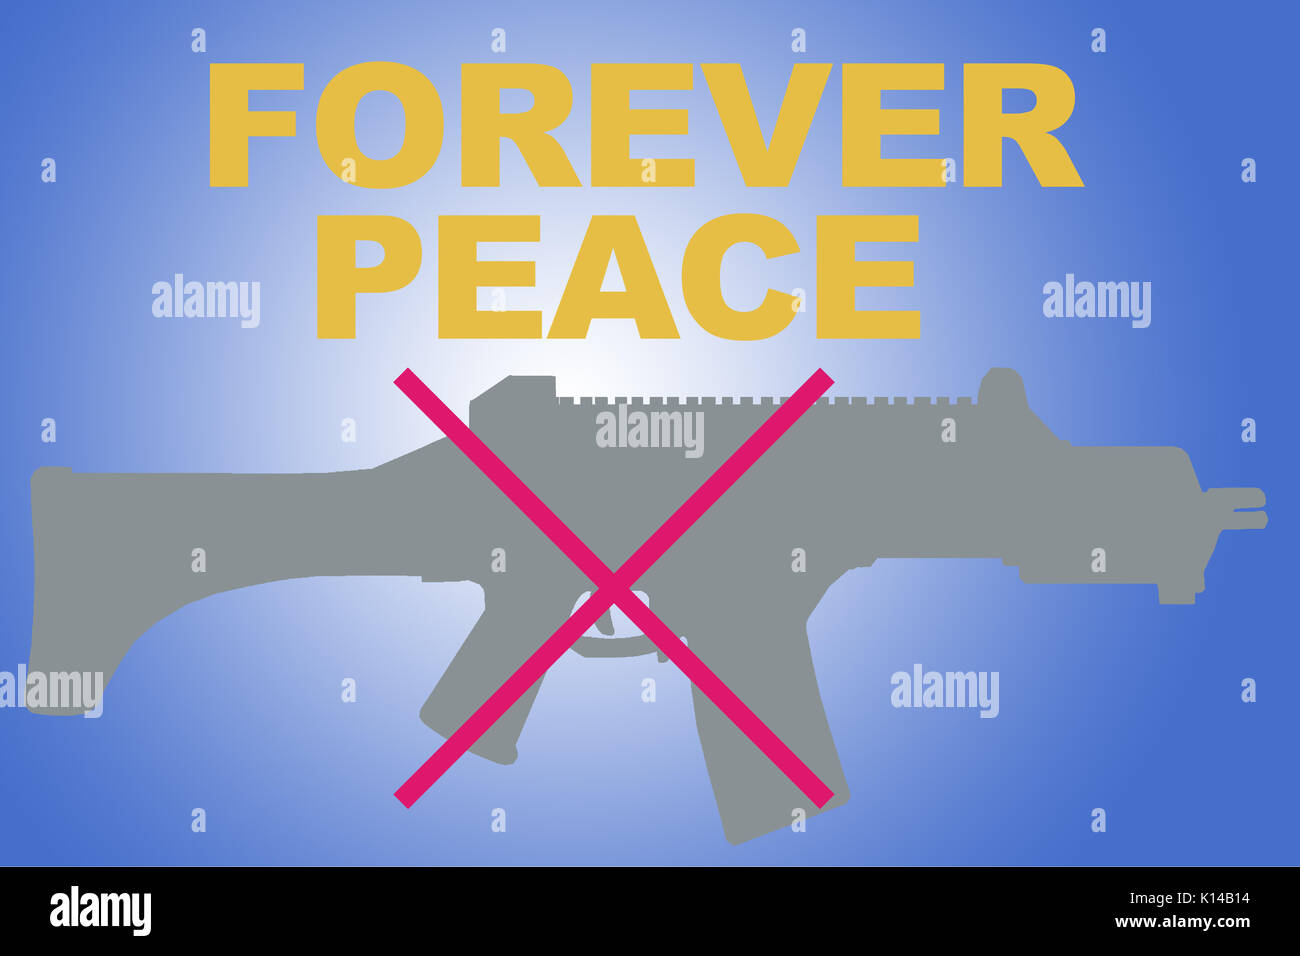 FOREVER PEACE sign concept illustration avec silhouette carabine gris et rouge dégradé bleu sur X Banque D'Images